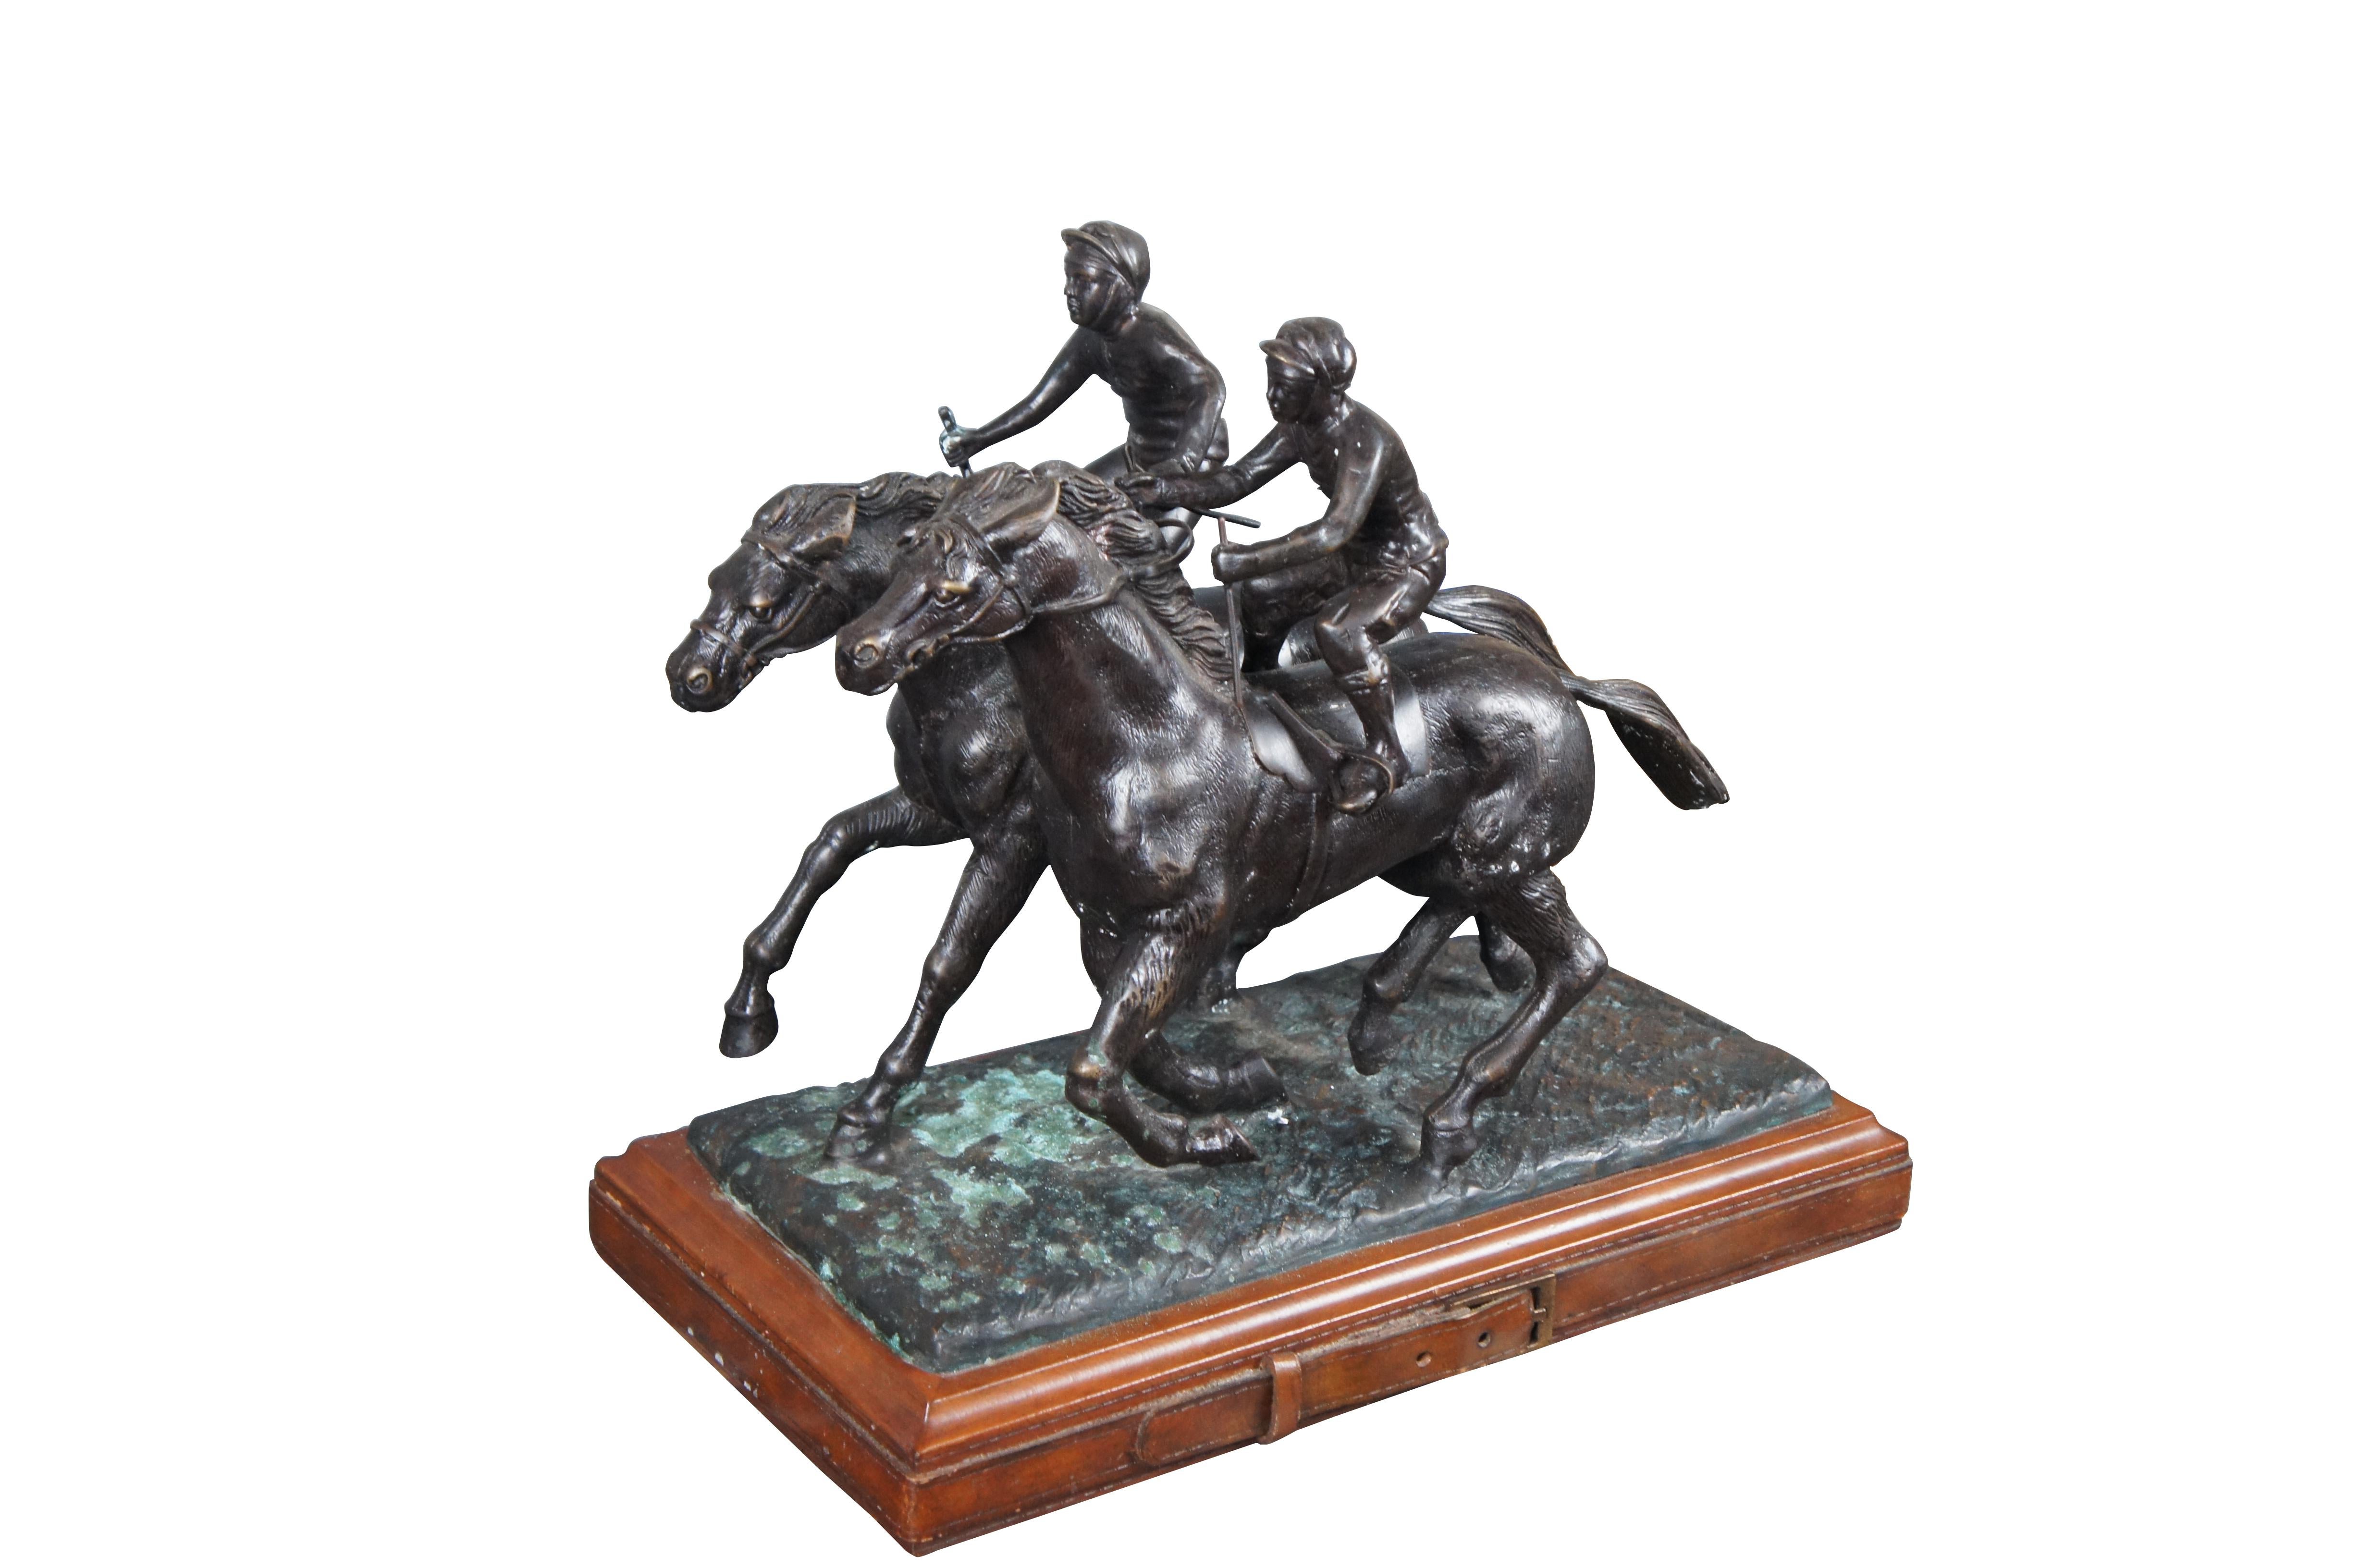 Vintage By Smith bronze deux jockeys sur des chevaux statue de course équestre avec base enveloppée de cuir.

Dimensions :
17,5